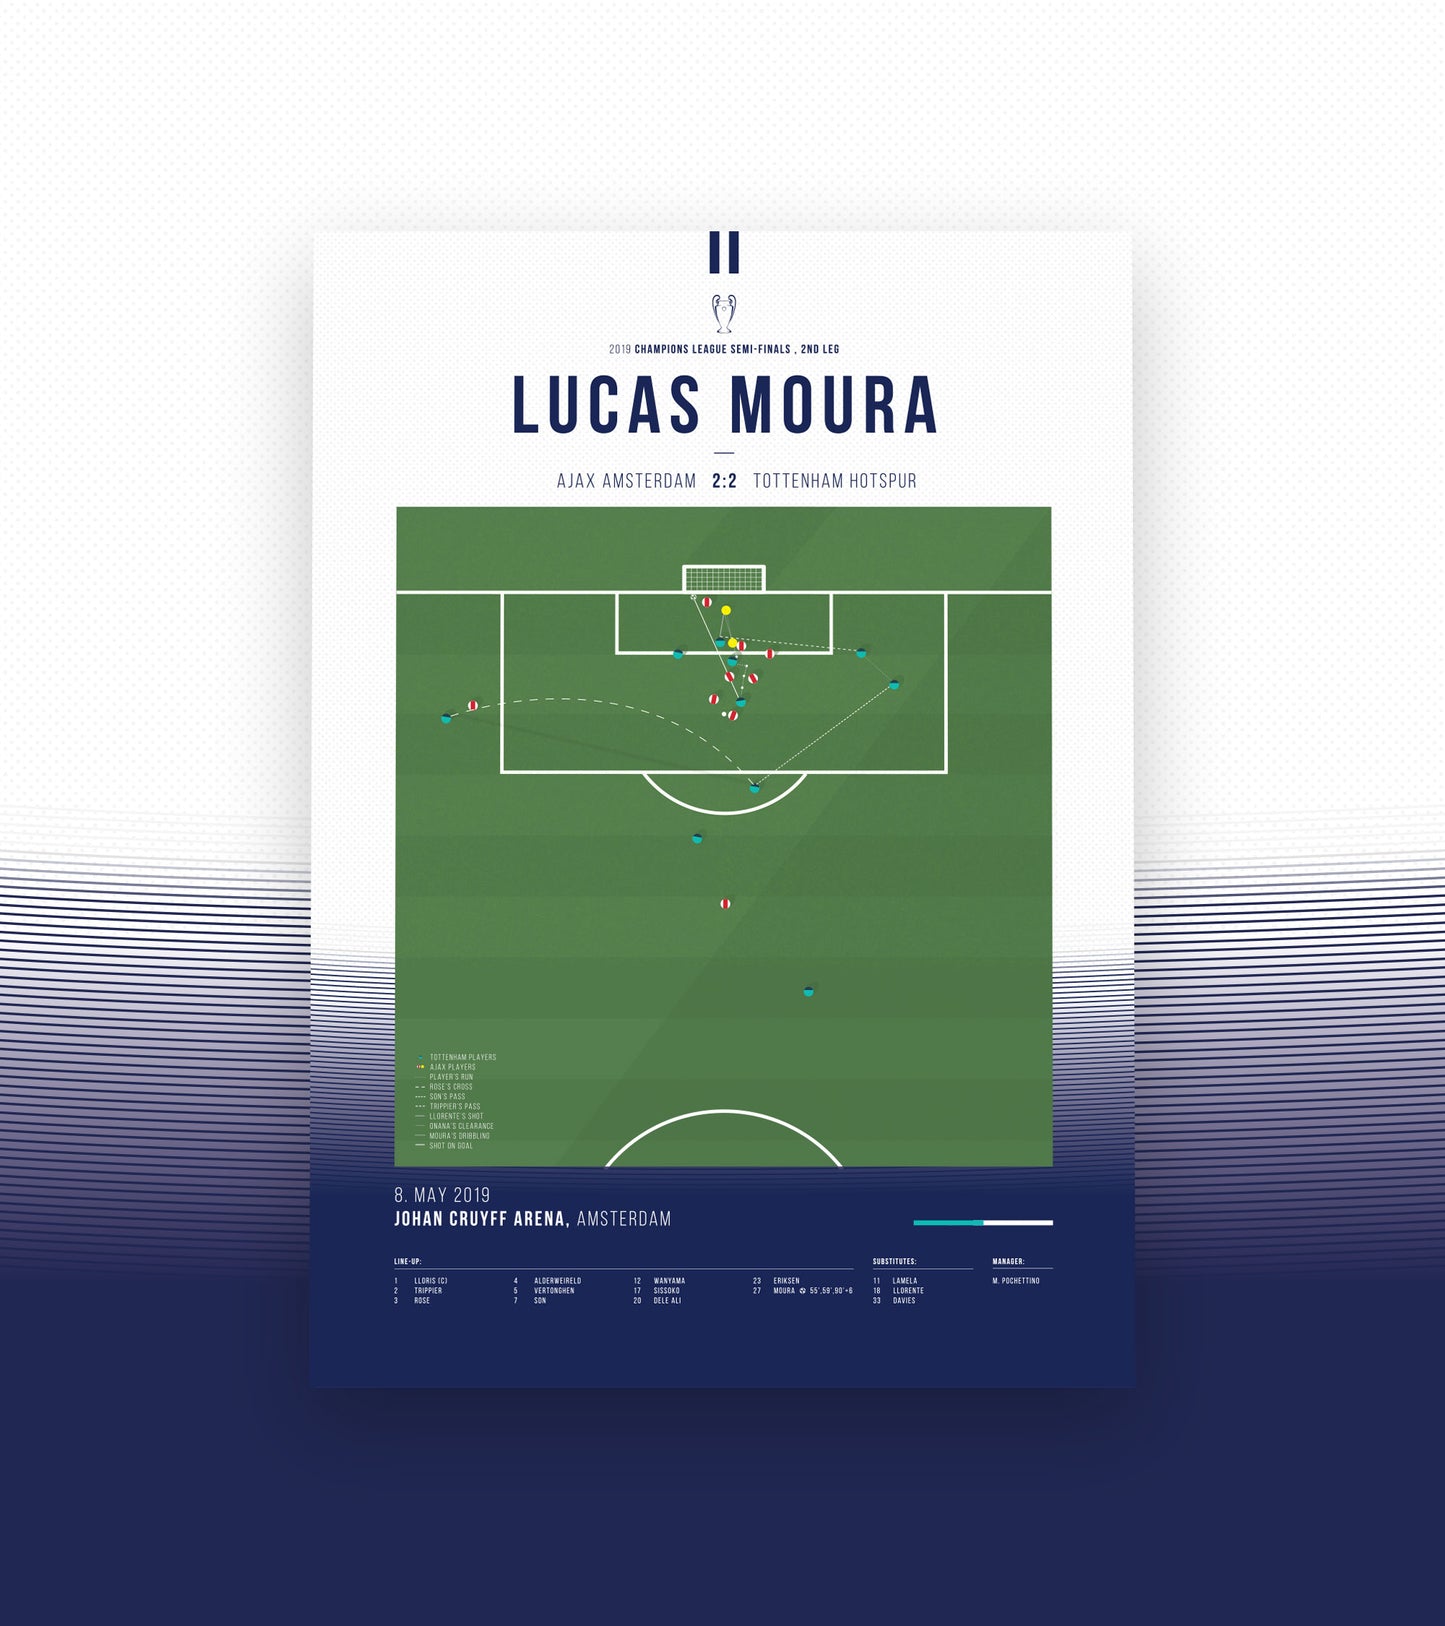 Lucas Mouras dramatisches Tor in der 96. Minute (2/3)